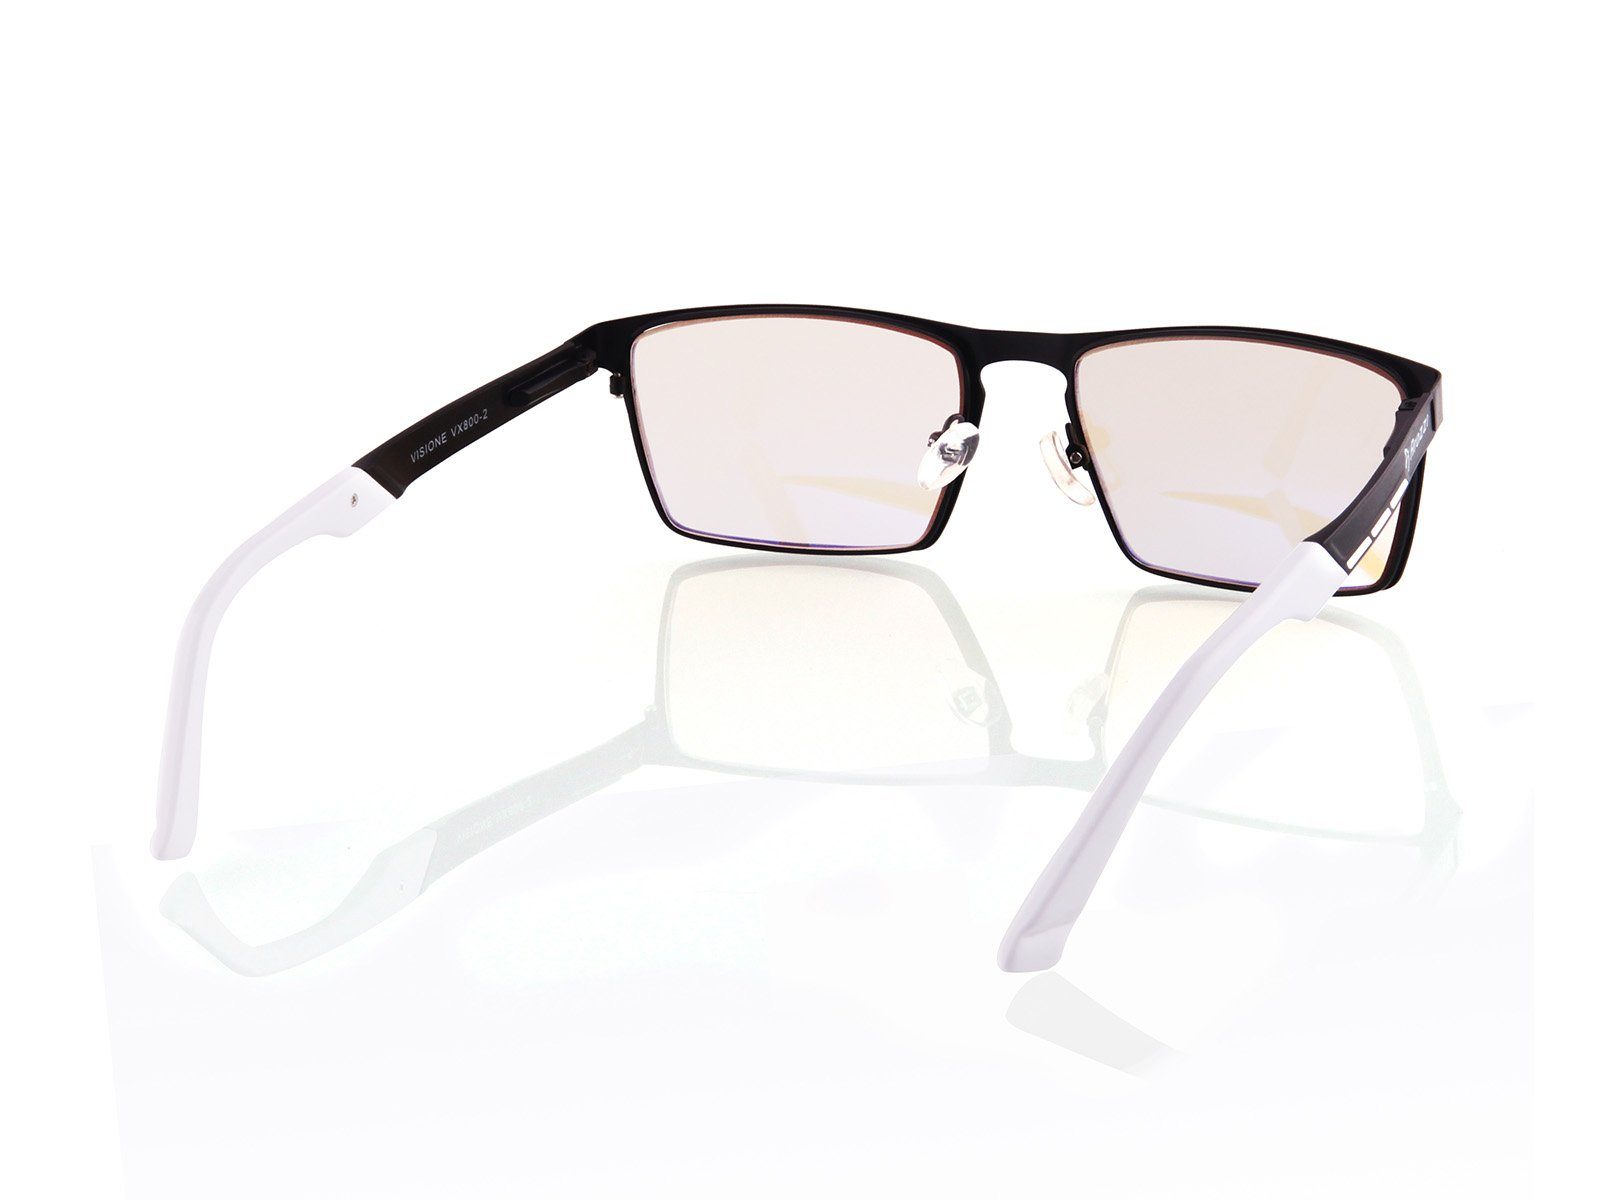 Schwarz - Brille Arozzi VX-800 Arozzi Visione Gaming Brille